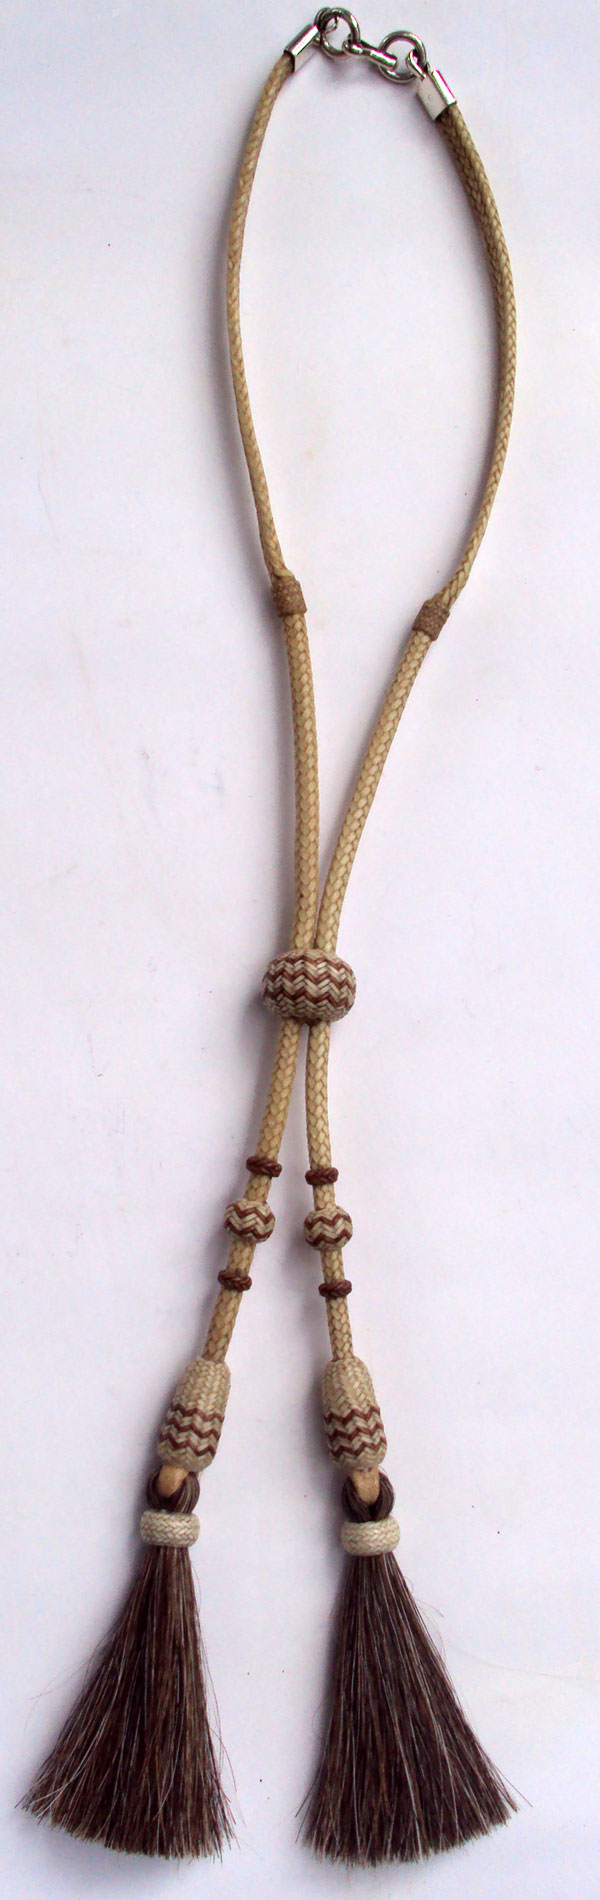 Necklace by Maximo Prado